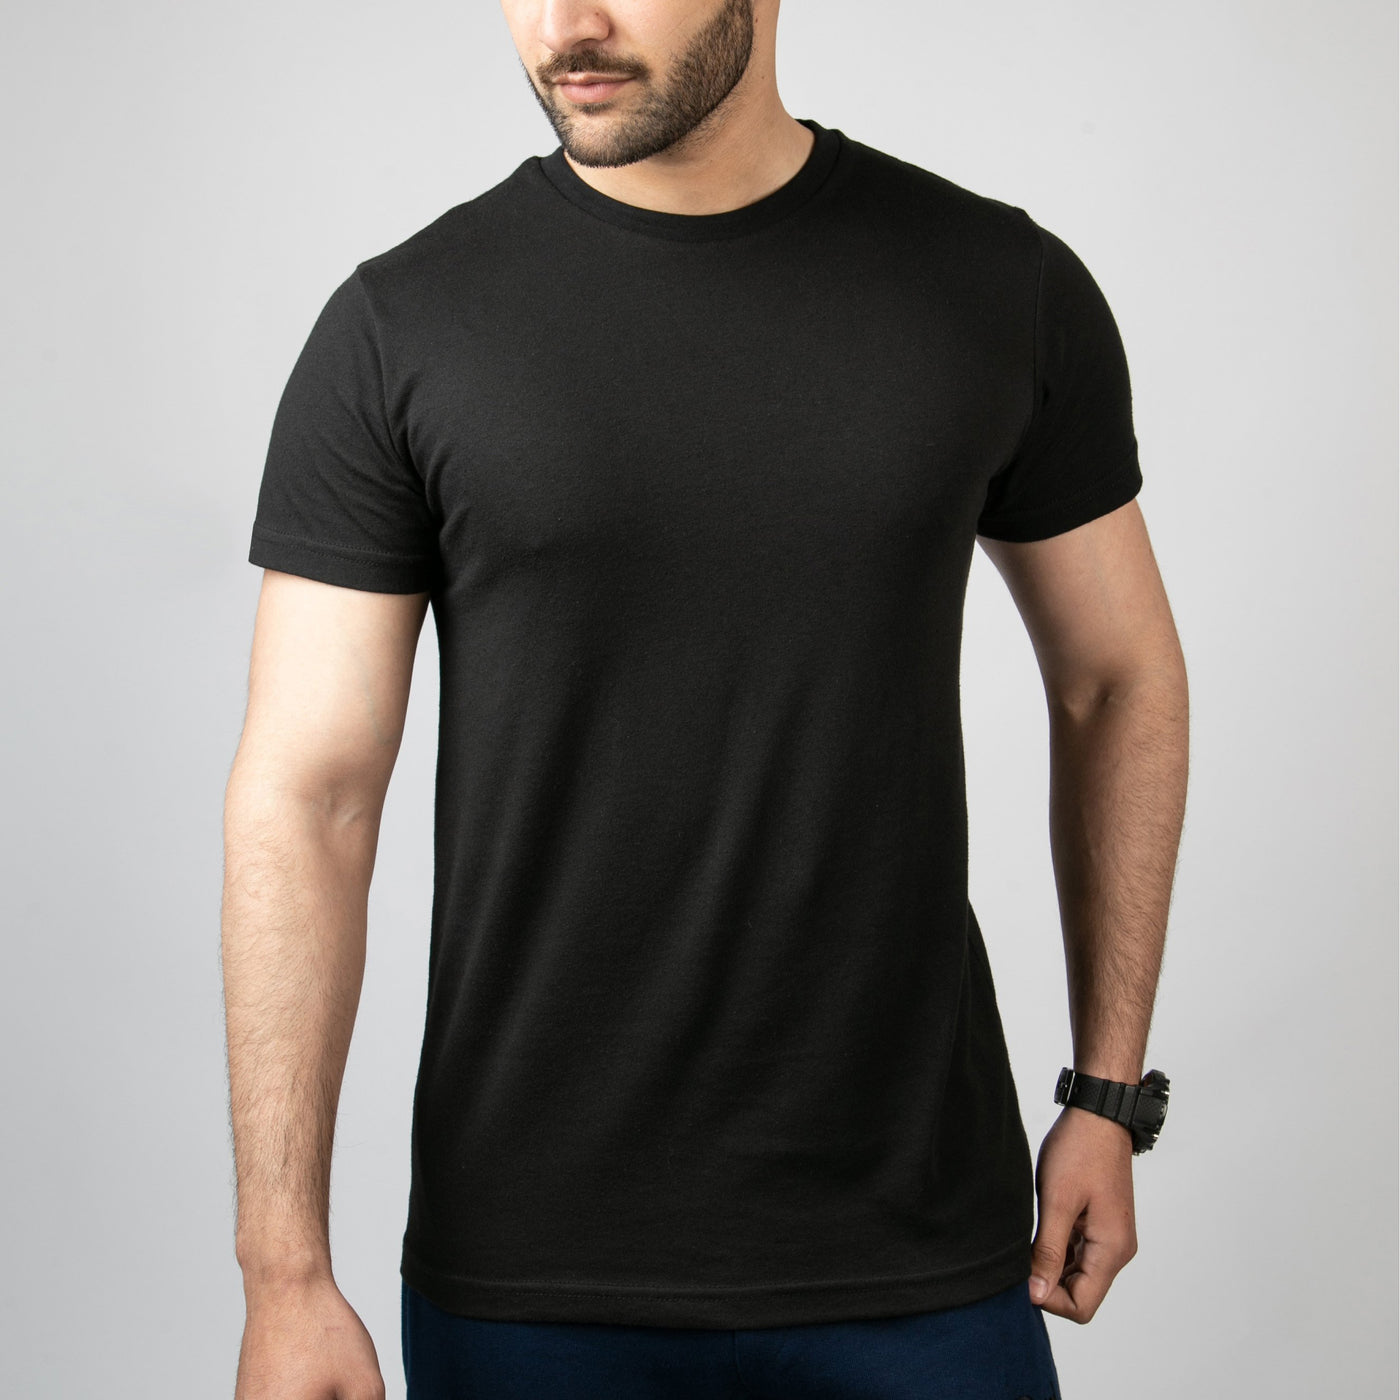 plain black t shirts